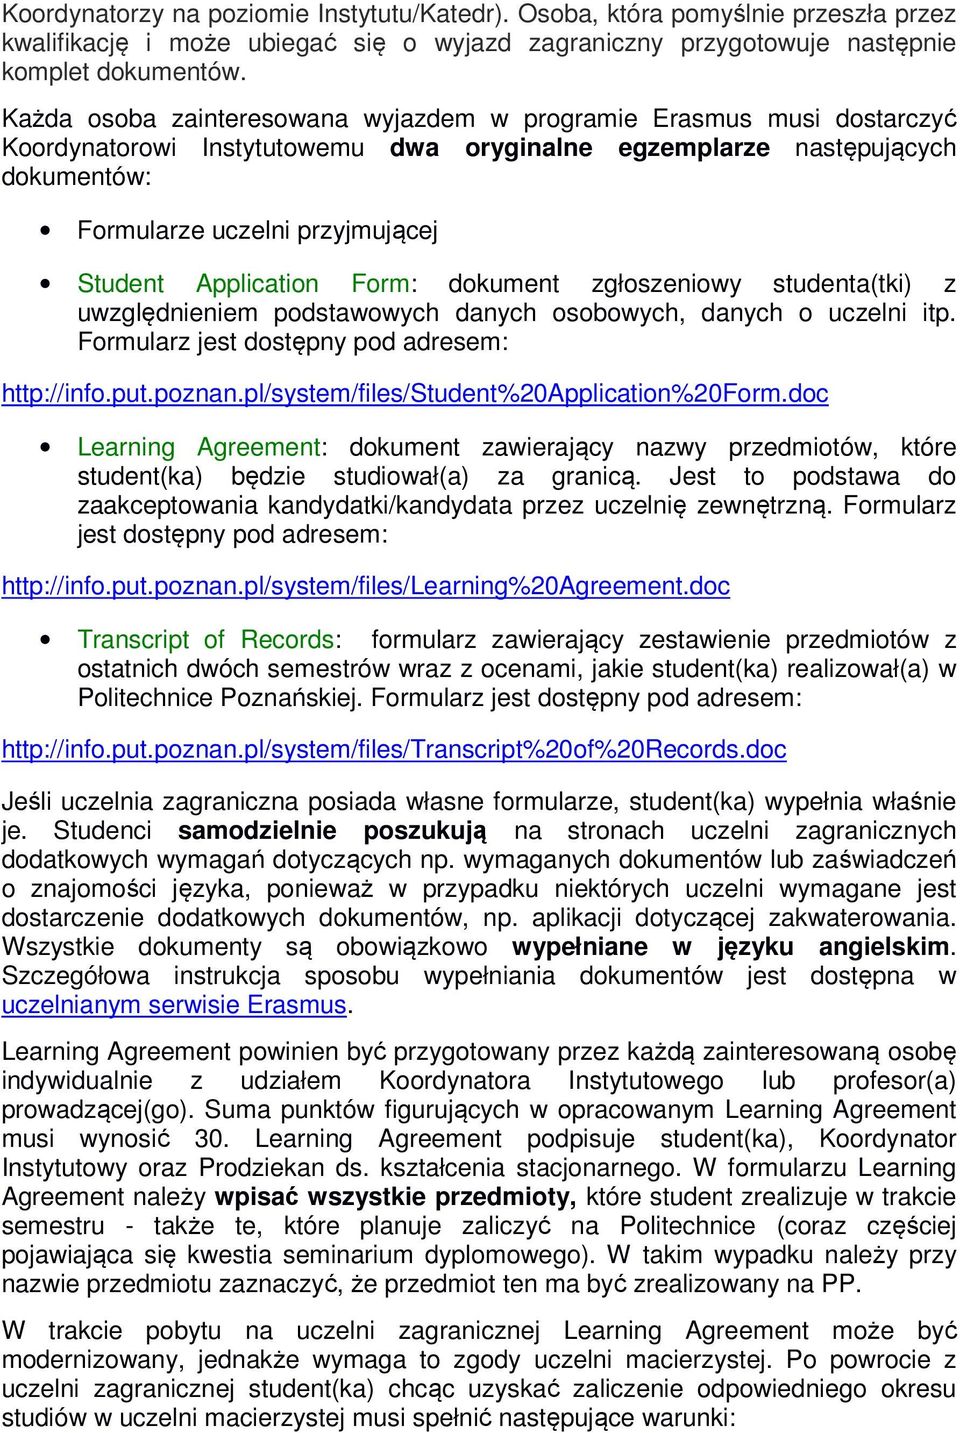 Application Form: dokument zgłoszeniowy studenta(tki) z uwzględnieniem podstawowych danych osobowych, danych o uczelni itp. Formularz jest dostępny pod adresem: http://info.put.poznan.